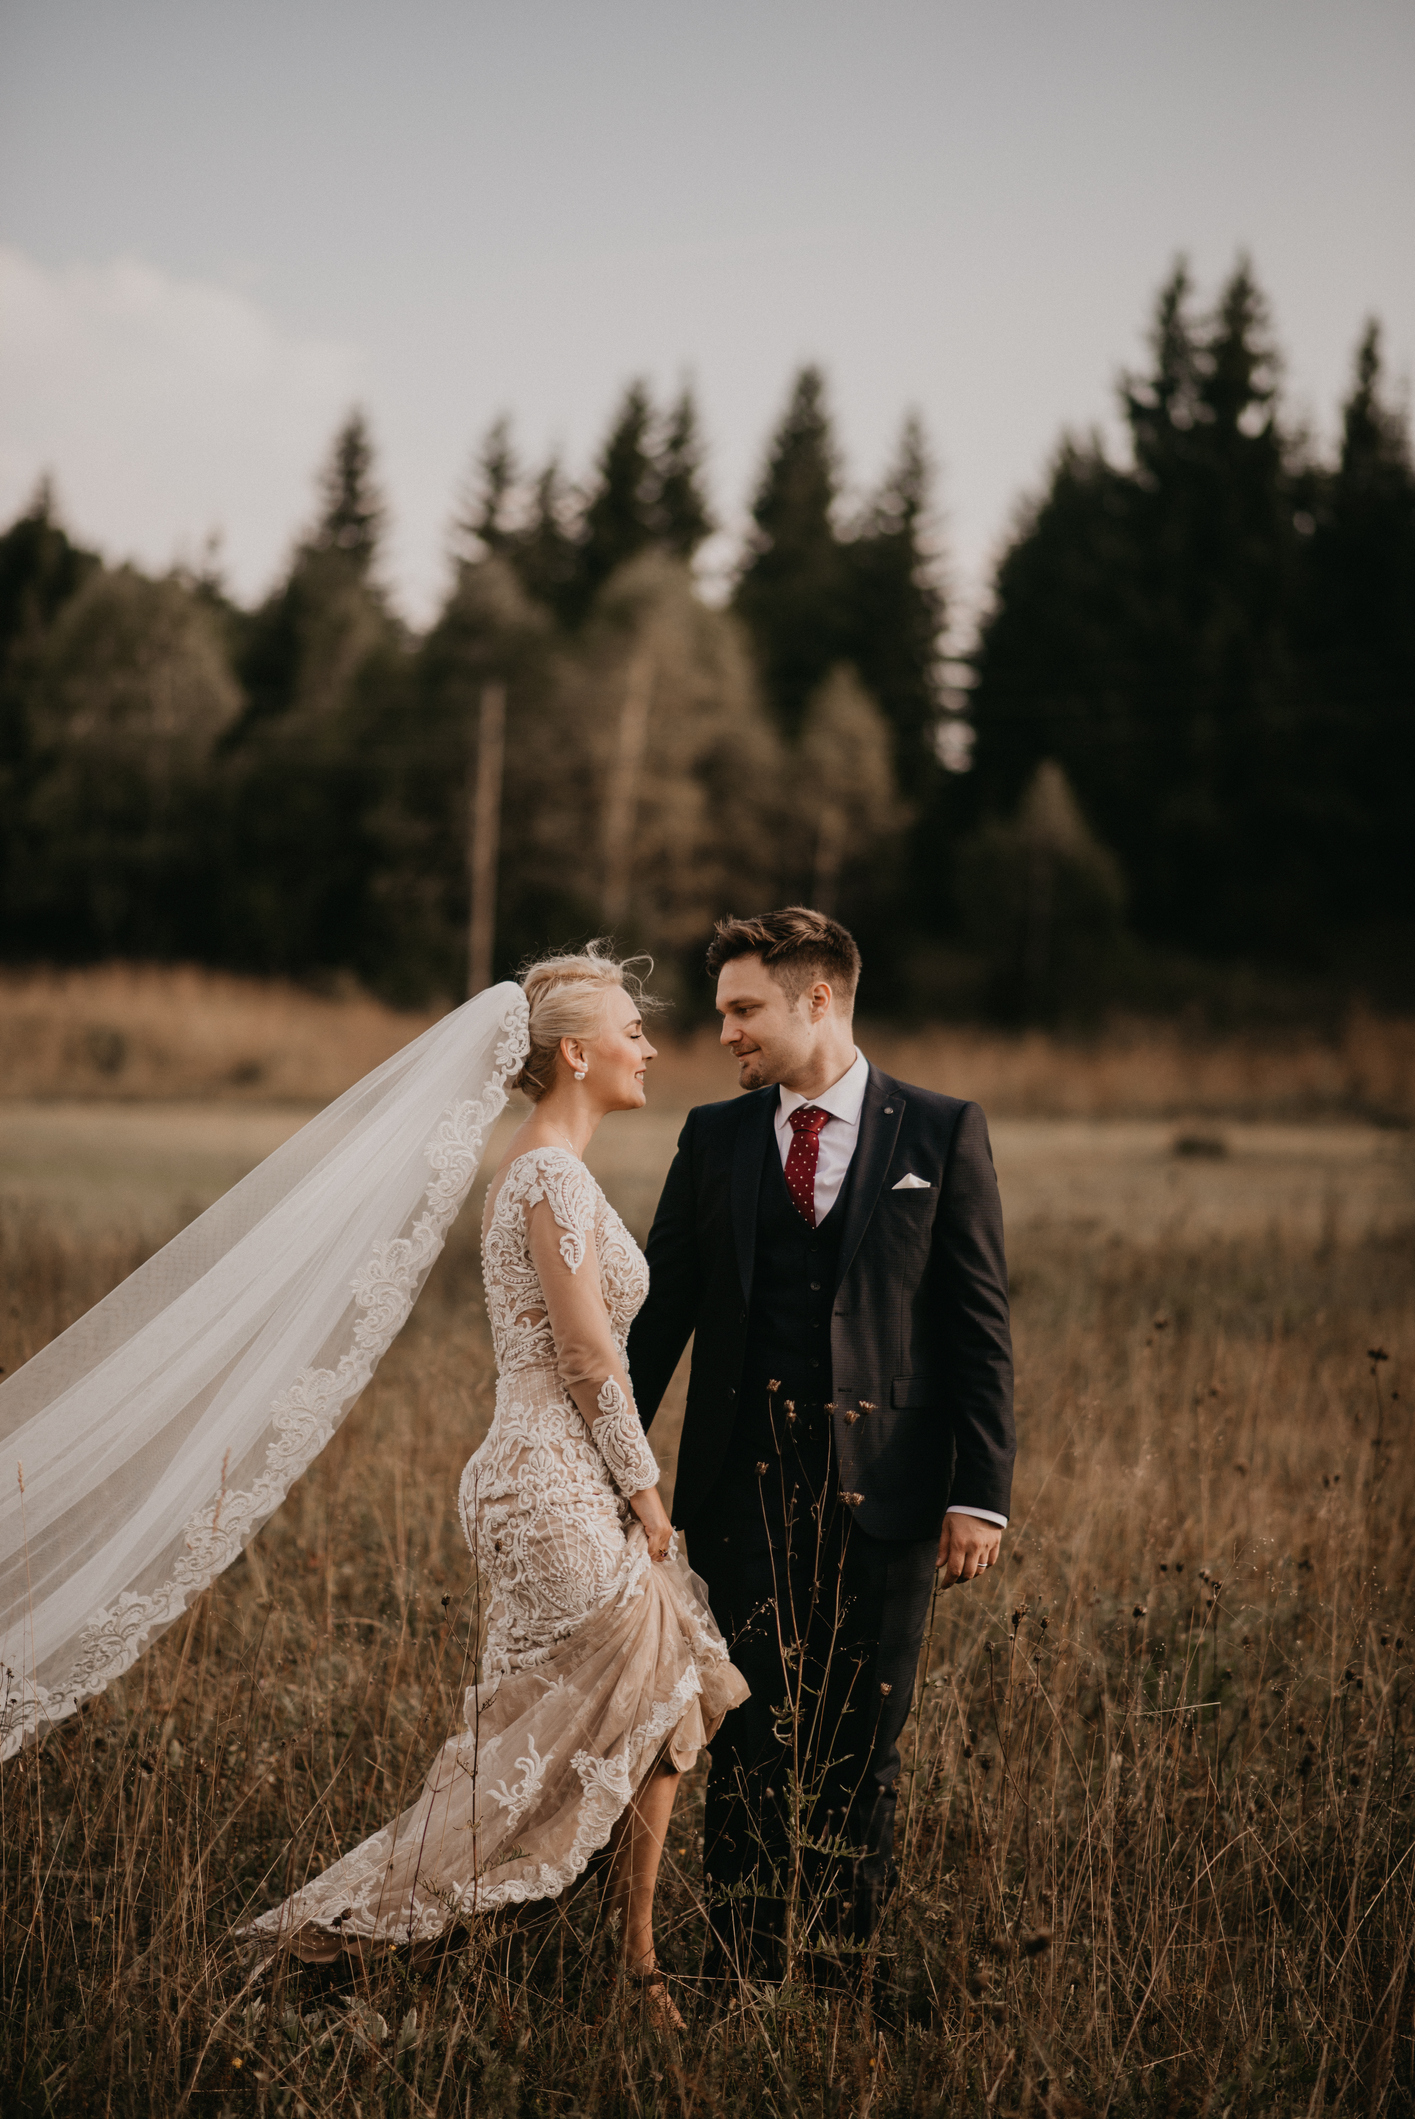 Braut und Bräutigam im Wald beim Fotoshooting.